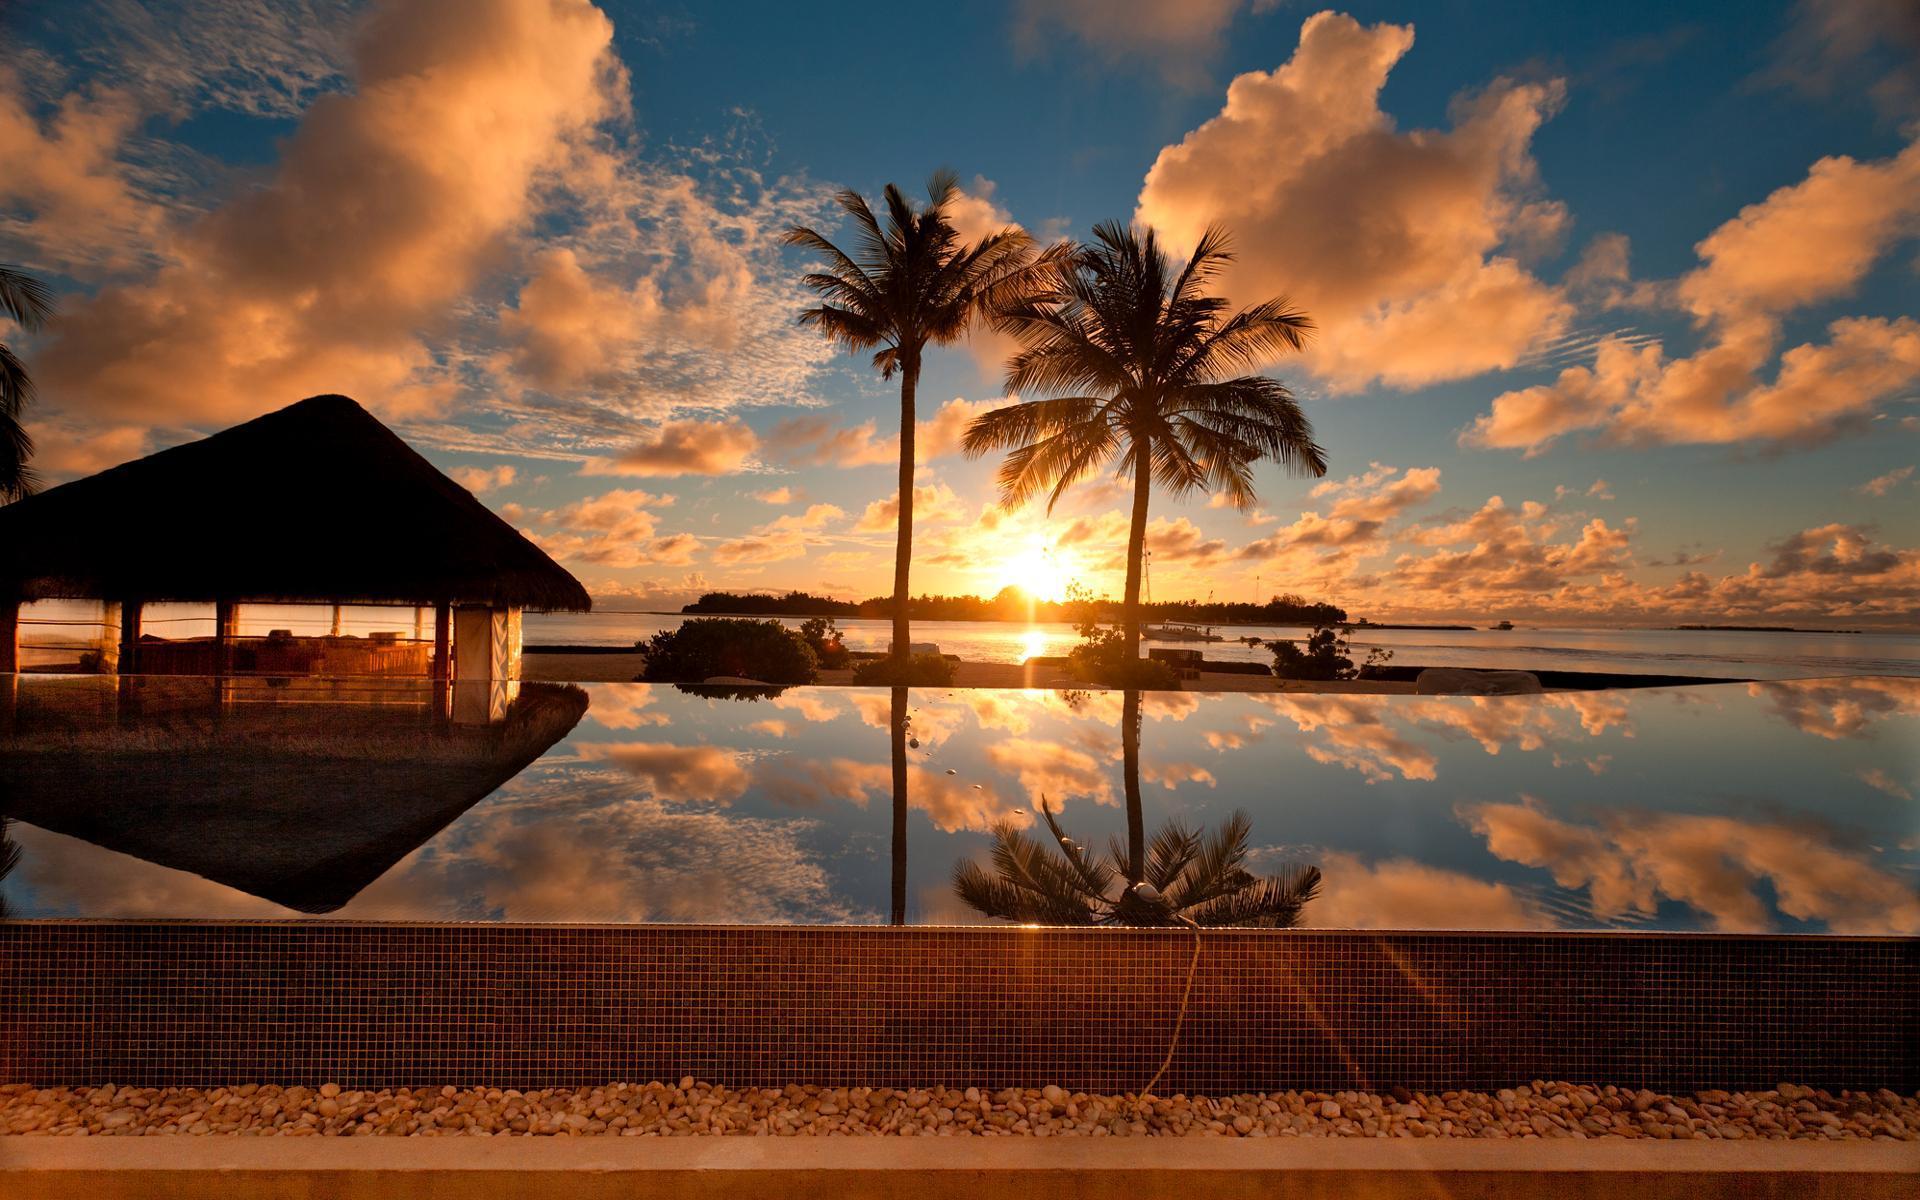 Sunset At Palm Beach HD desktop wallpaper, Widescreen, High